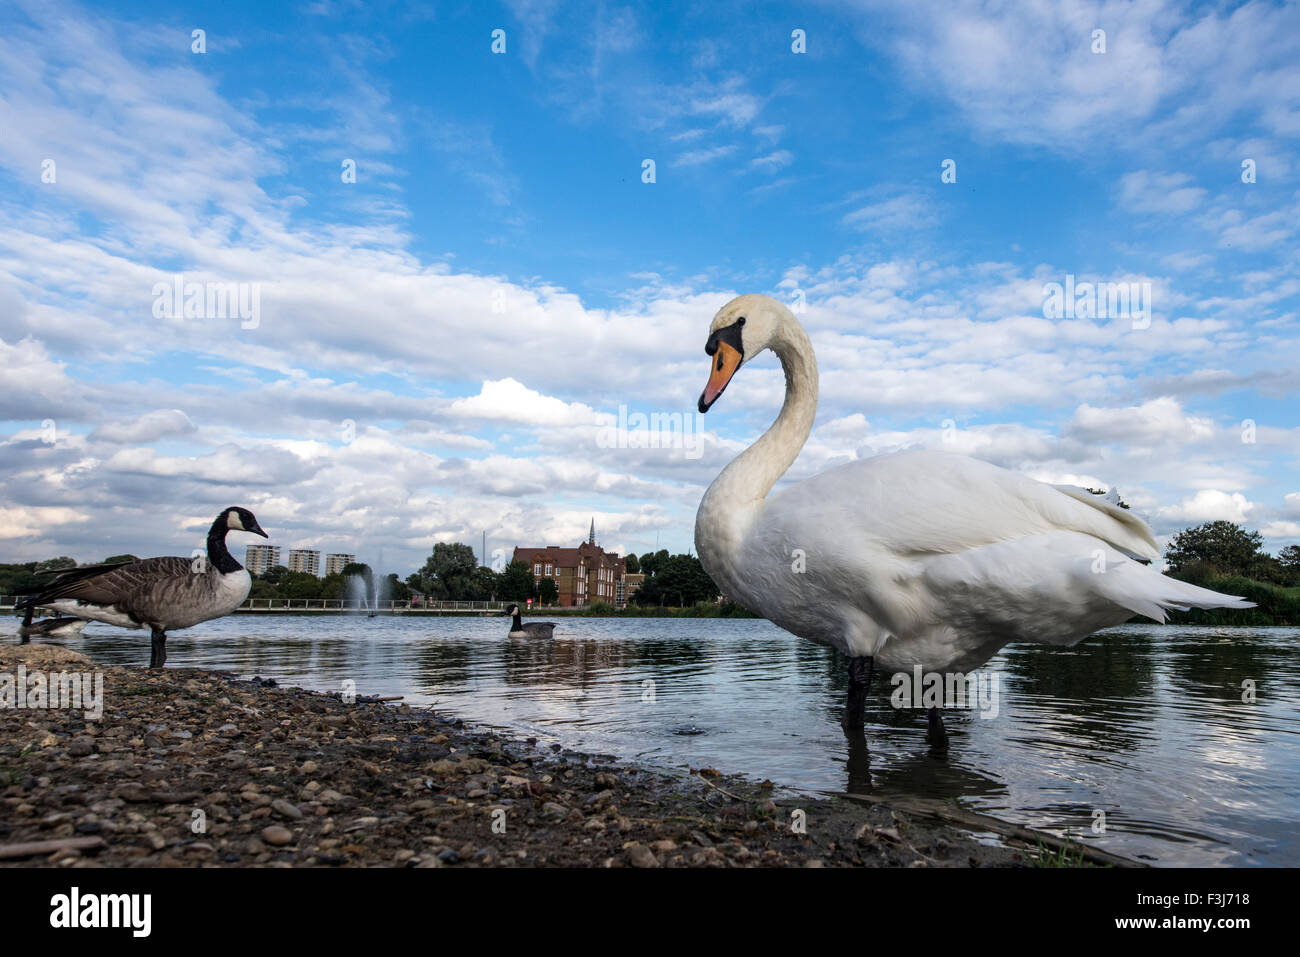 Les adultes le Cygne tuberculé (Cygnus olor) dans l'eau Burgess Park, Londres, Angleterre, Grande-Bretagne, Royaume-Uni, Europe Banque D'Images